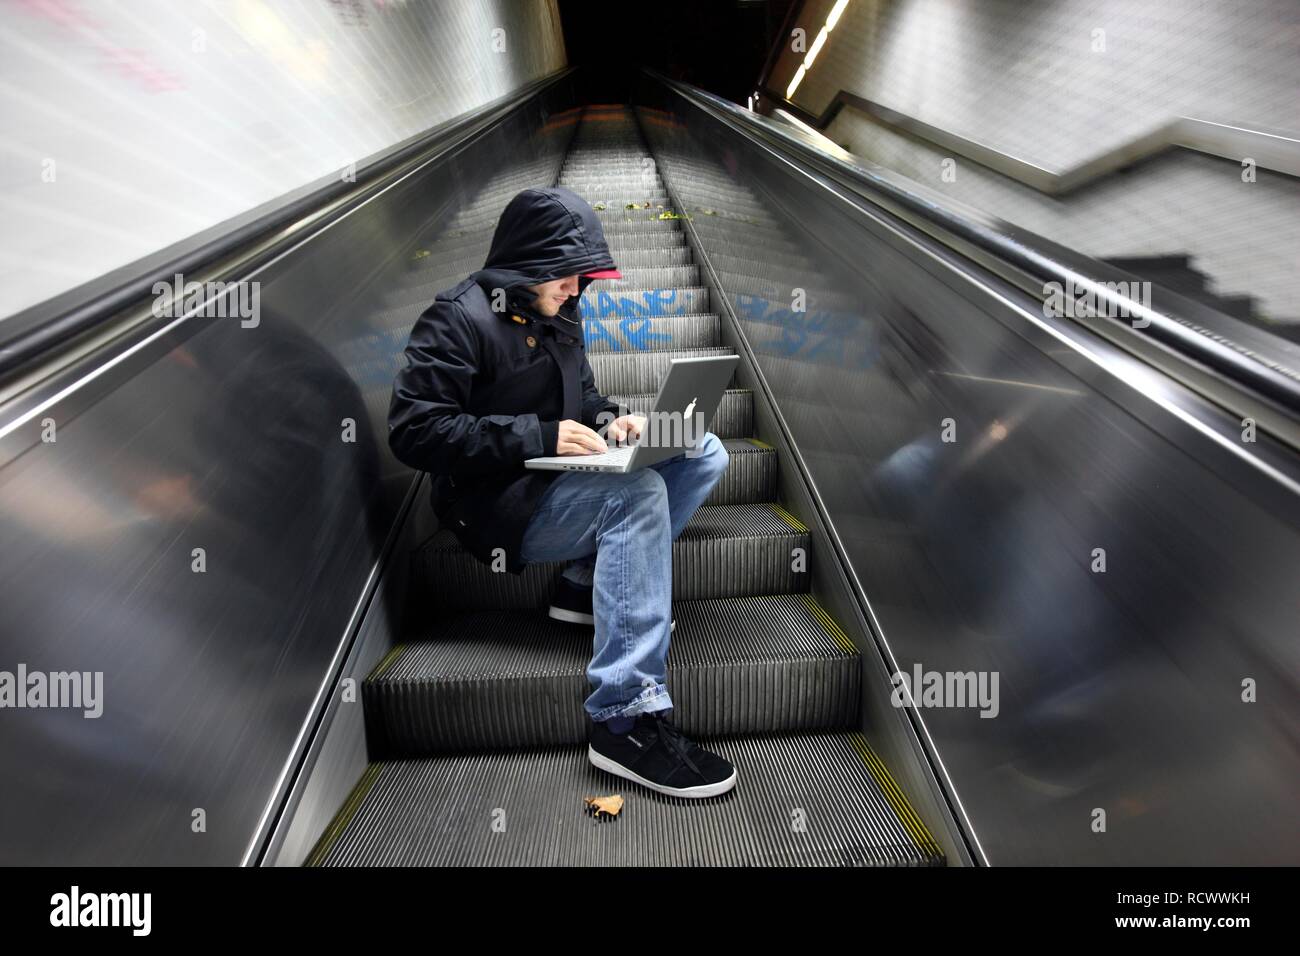 Hacker travaillant sur un ordinateur portable sur un escalator dans un passage du métro la nuit, image symbolique pour le piratage informatique Banque D'Images